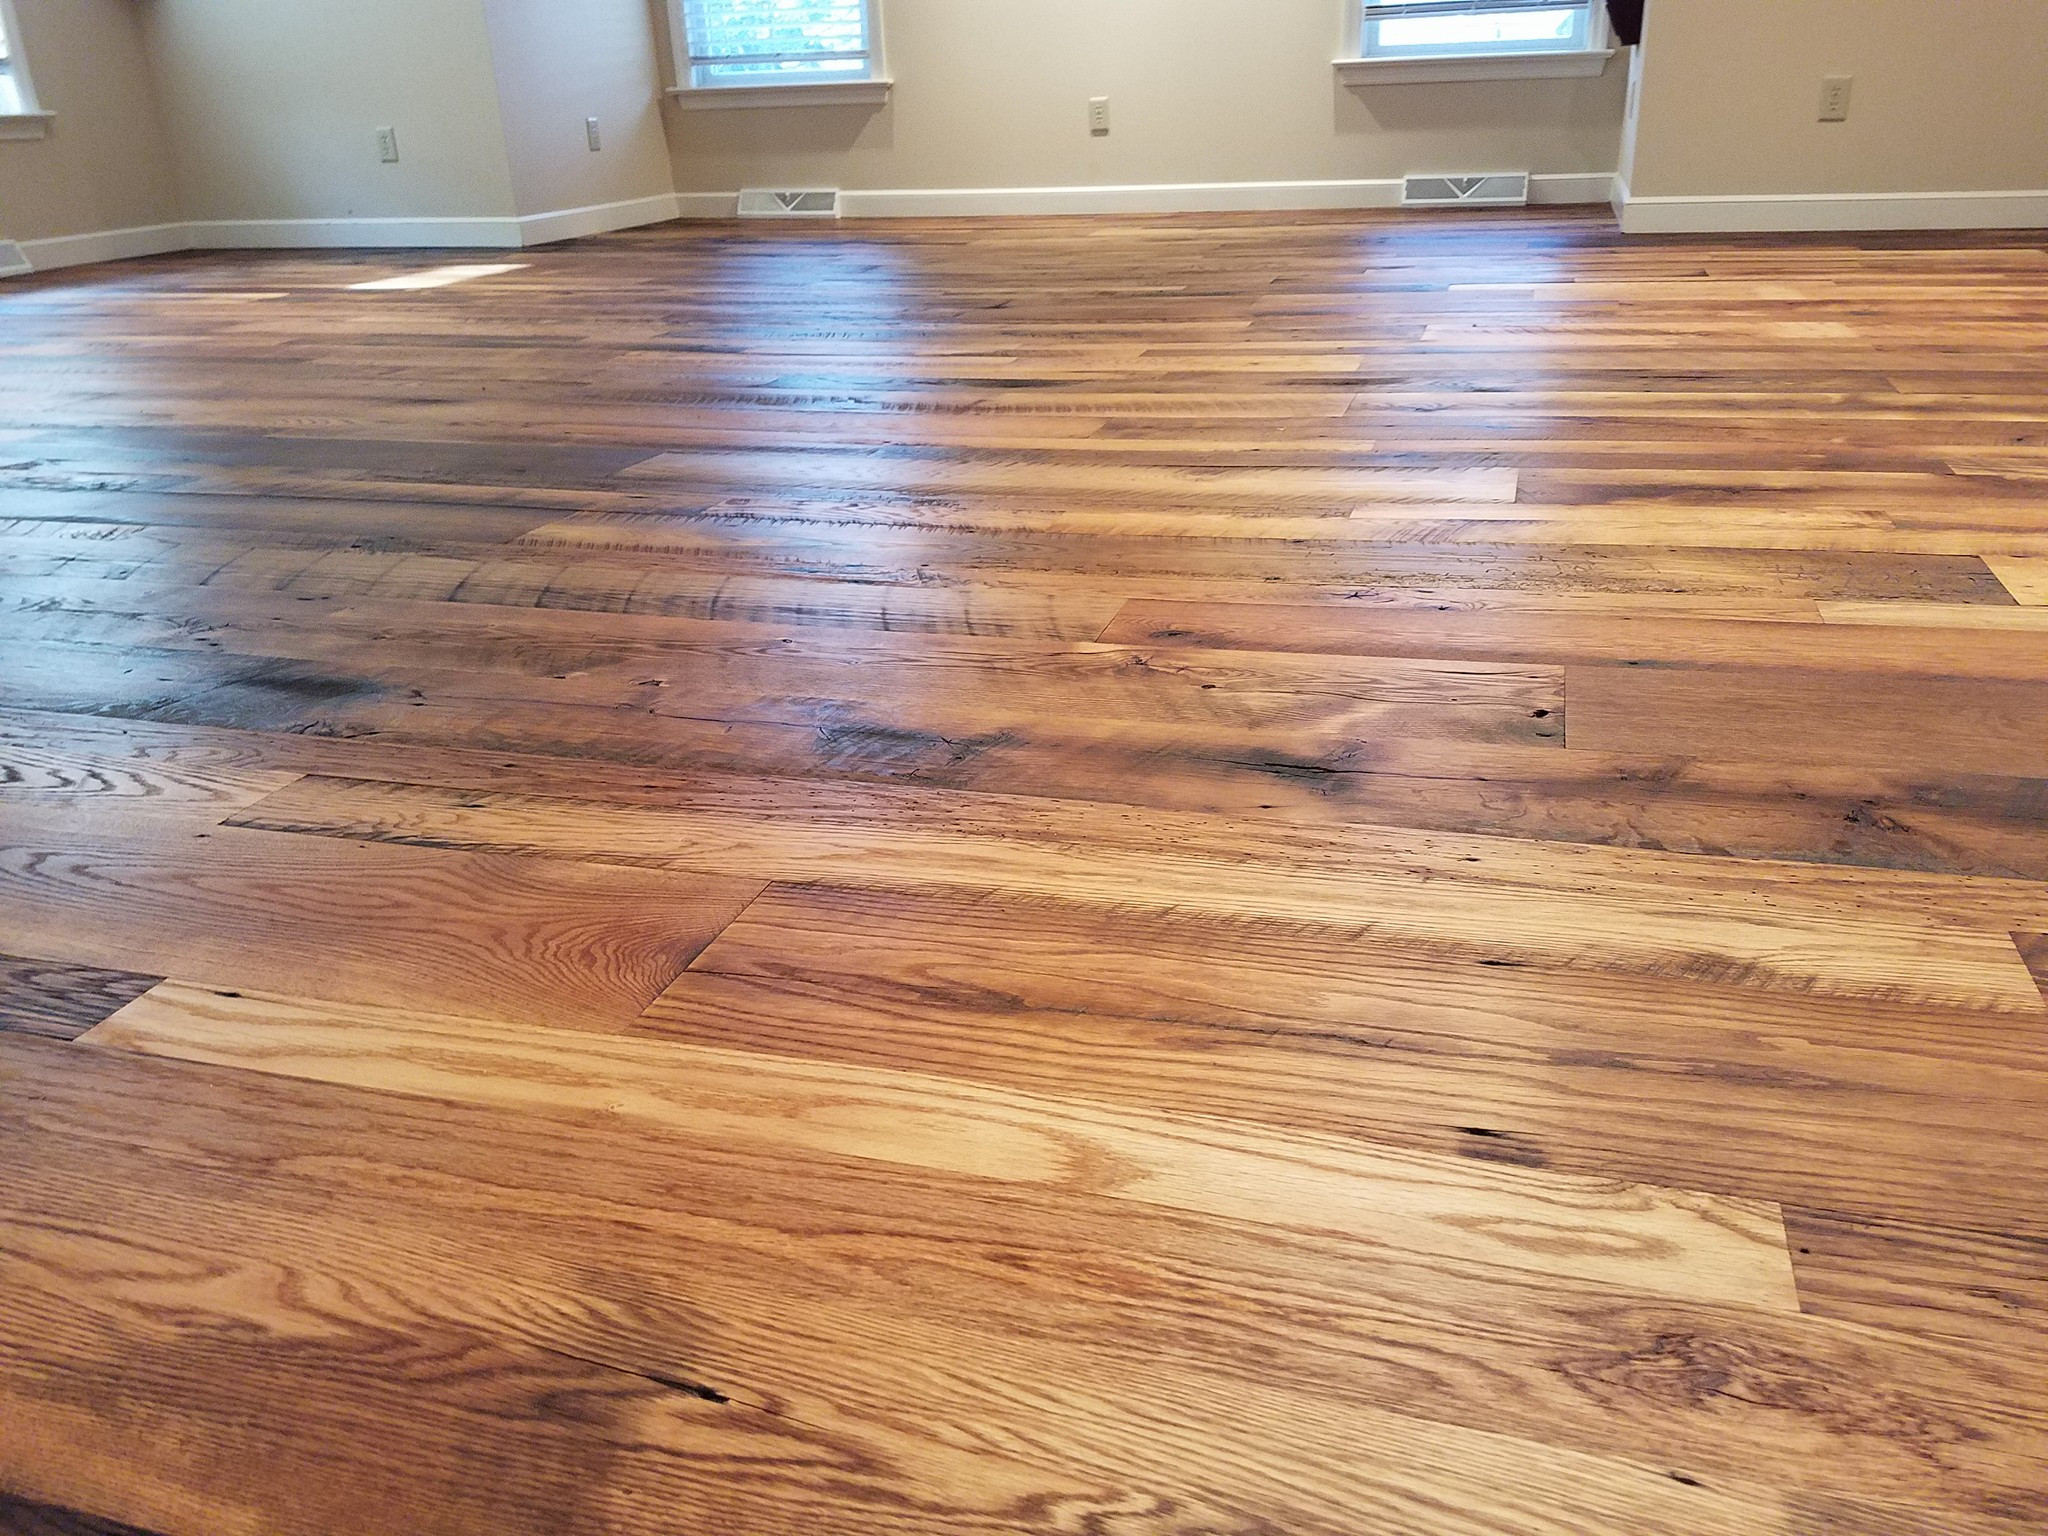 17 Spectacular Hardwood Floor Repair Companies Near Me 2024 free download hardwood floor repair companies near me of vintage wood flooring with regard to 15540630 1468260353201806 4284335561504308085 o